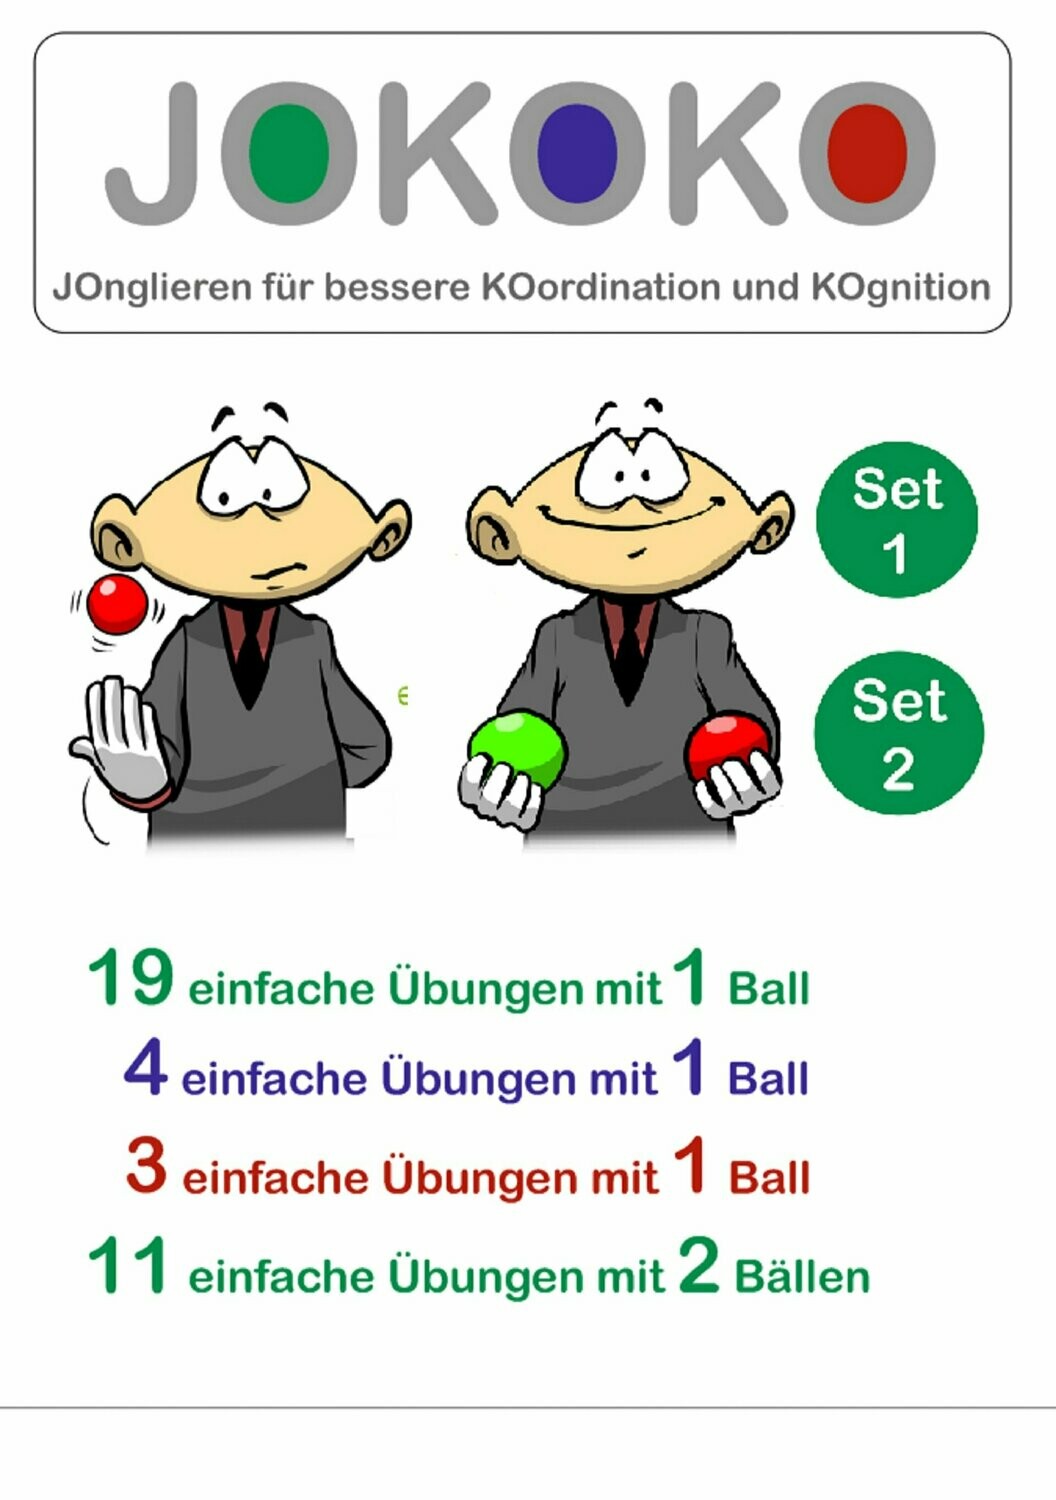 JOKOKO-DIN A5-Karten - SET 1 + Set 2 = 26 Übungen mit 1 Ball plus 11 einfache Übungen mit 2 Bällen